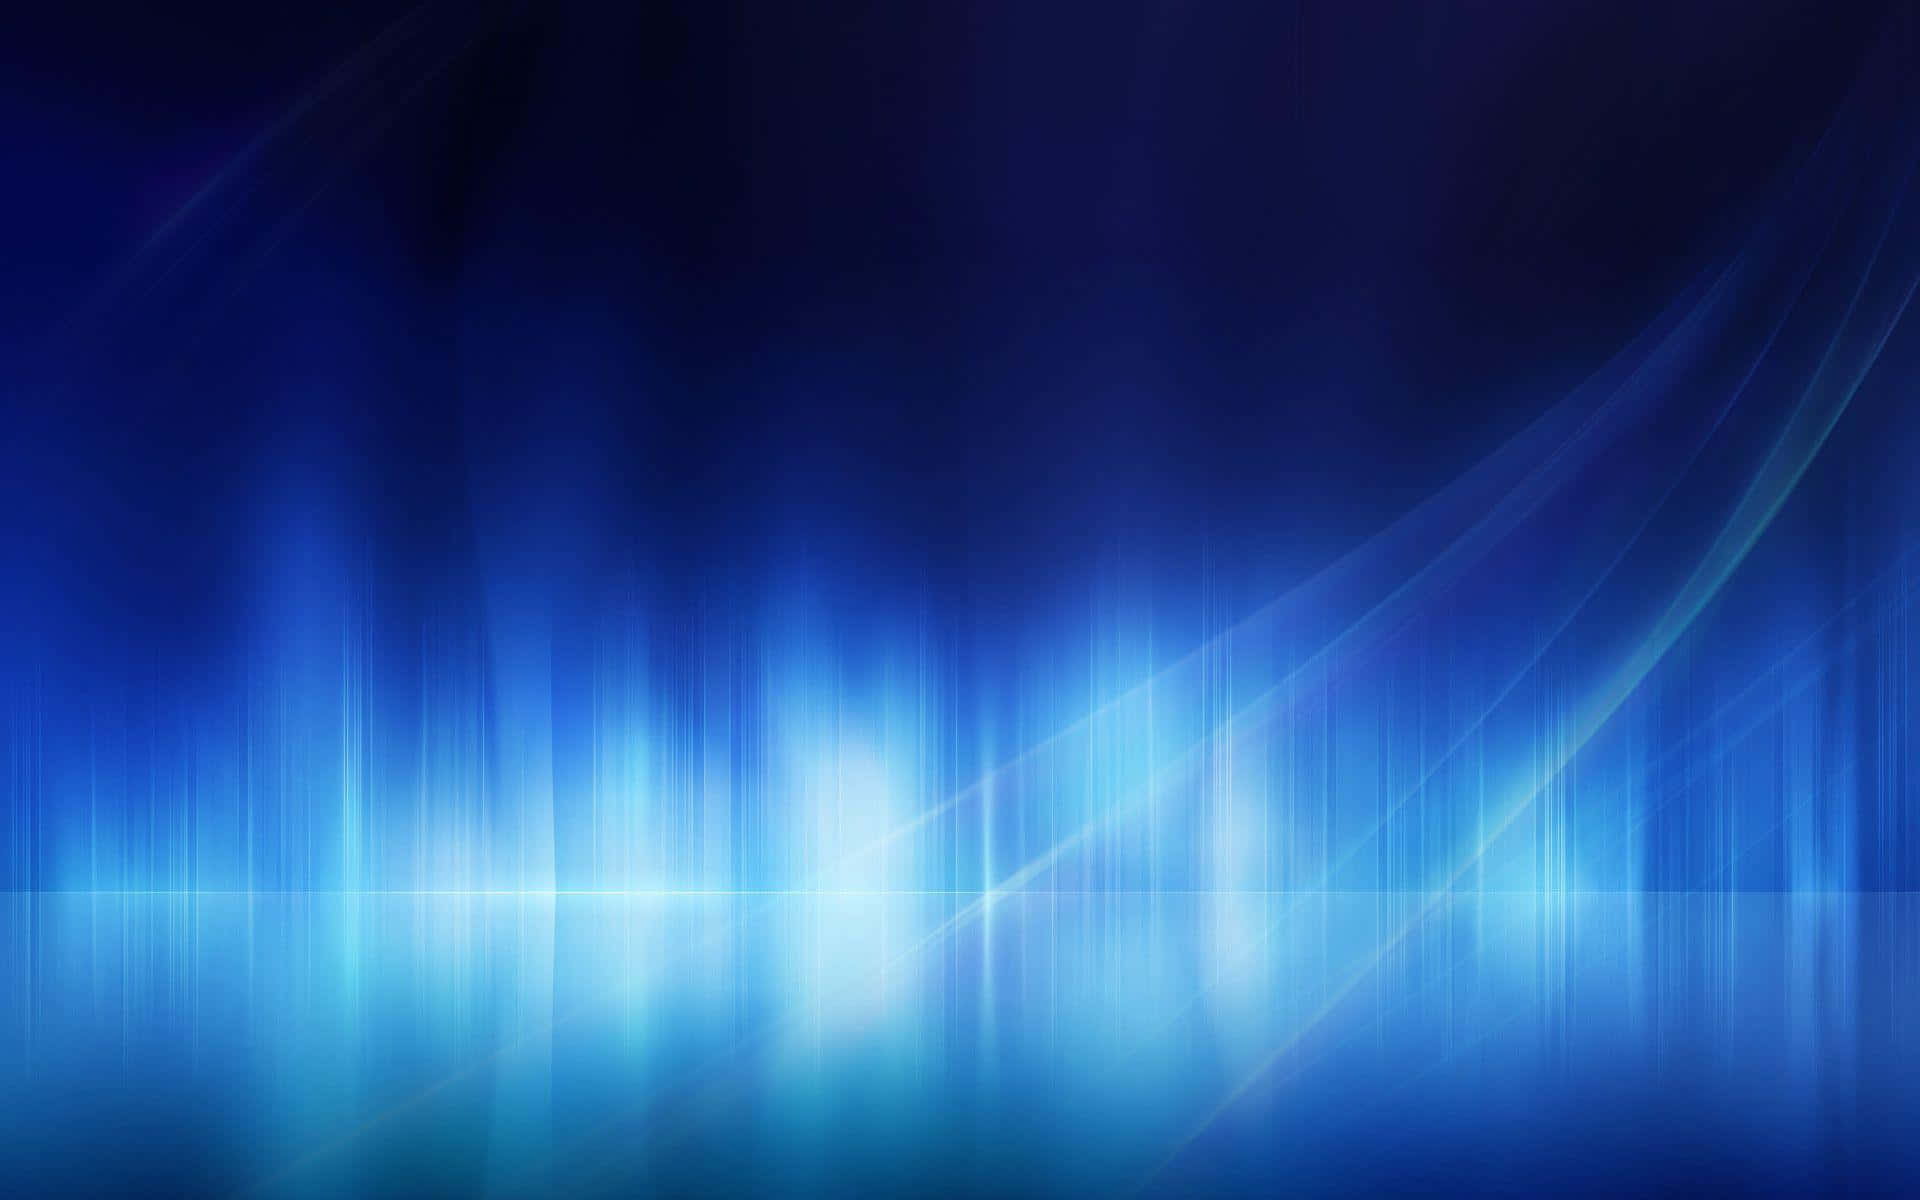 Bars Of Light Blue PC Wallpaper